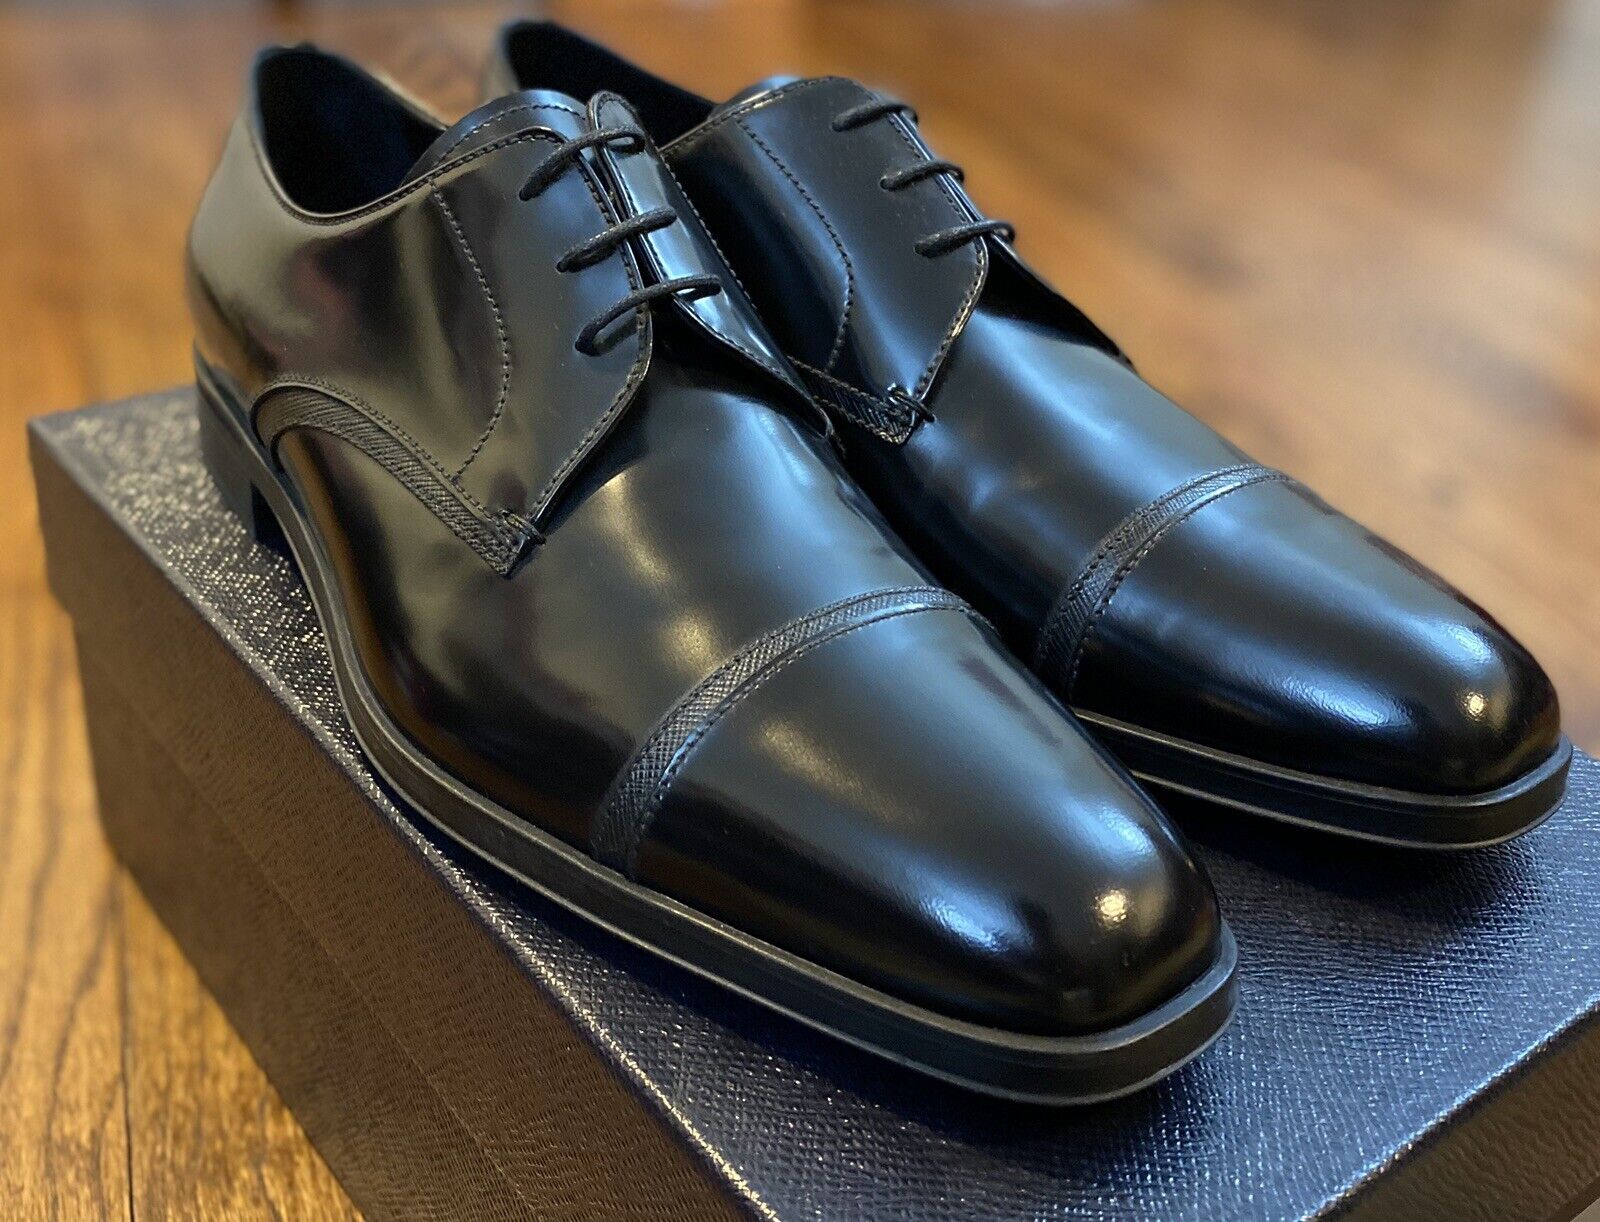 prada black dress shoes